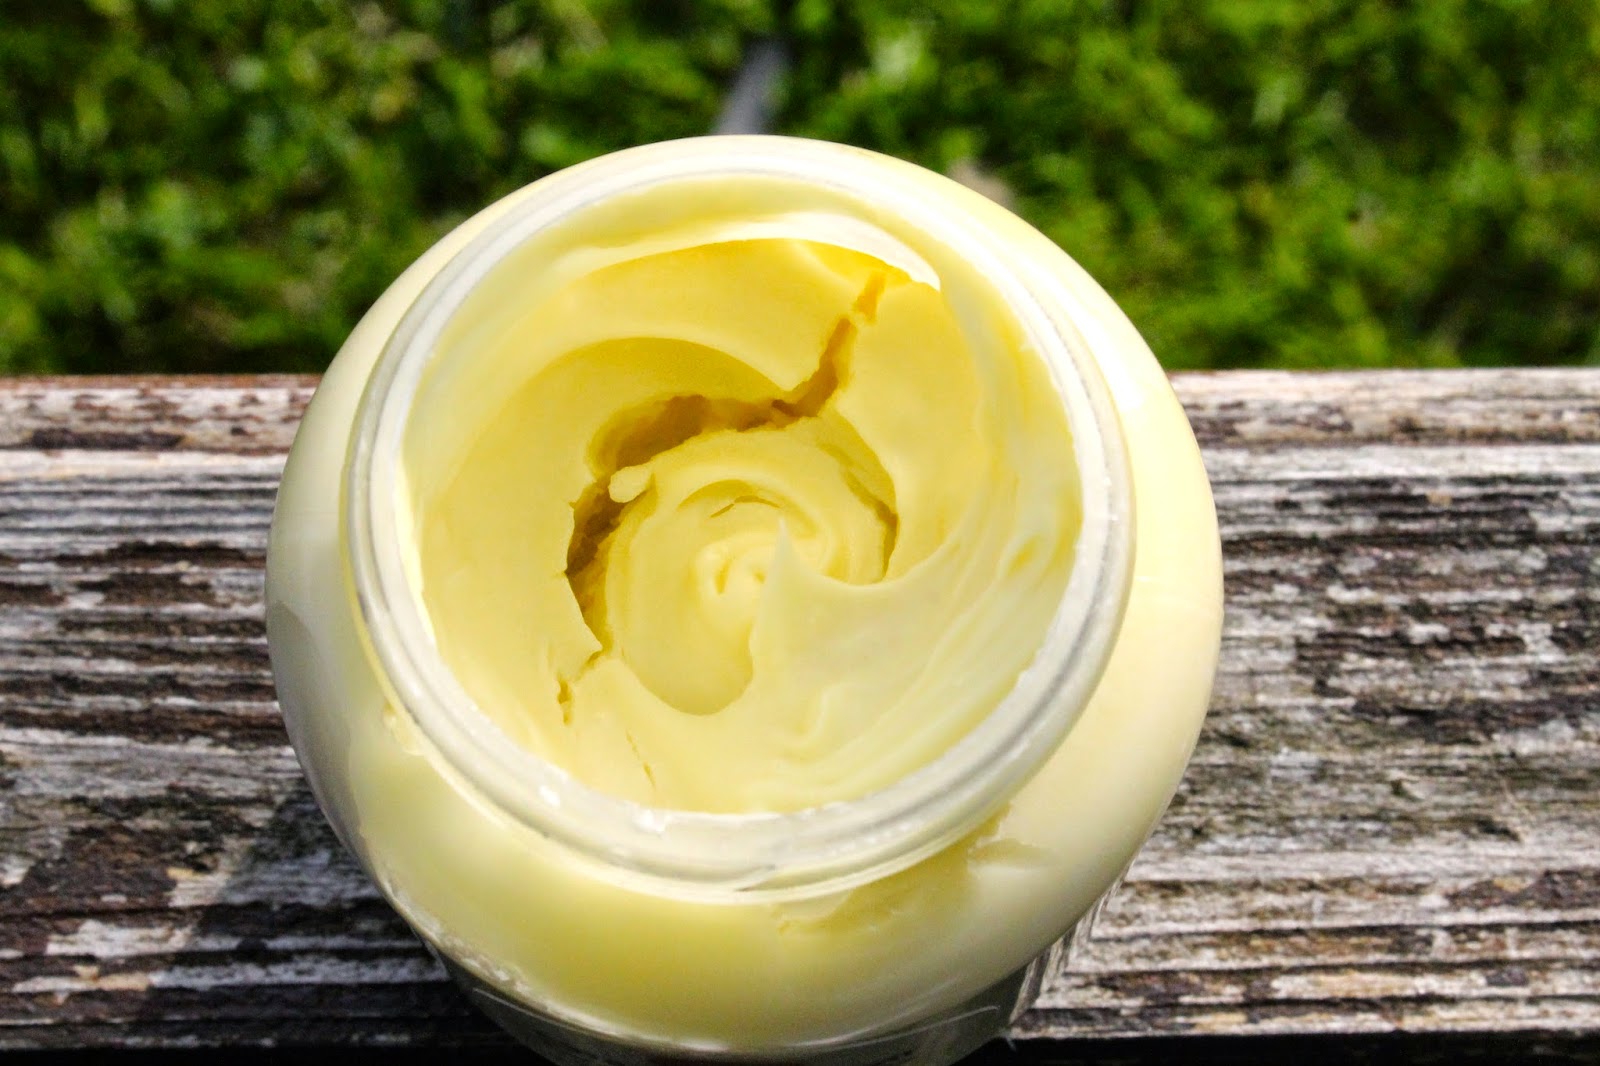 argan and rosemary hair oil treatment blog